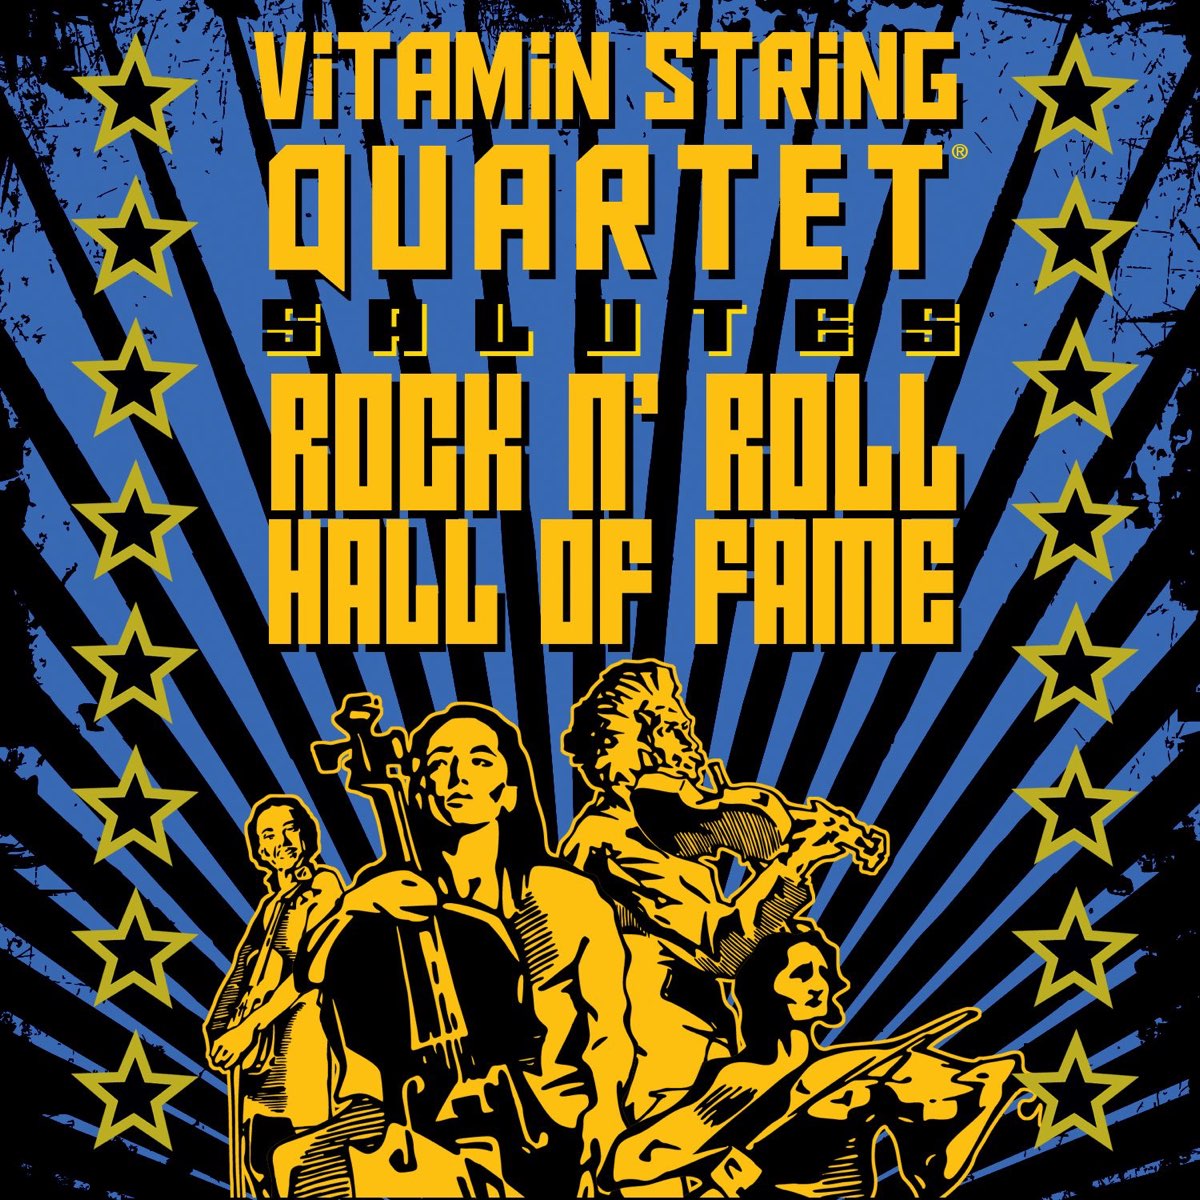 Vitamin quartet. Vitamin String Quartet альбомы.